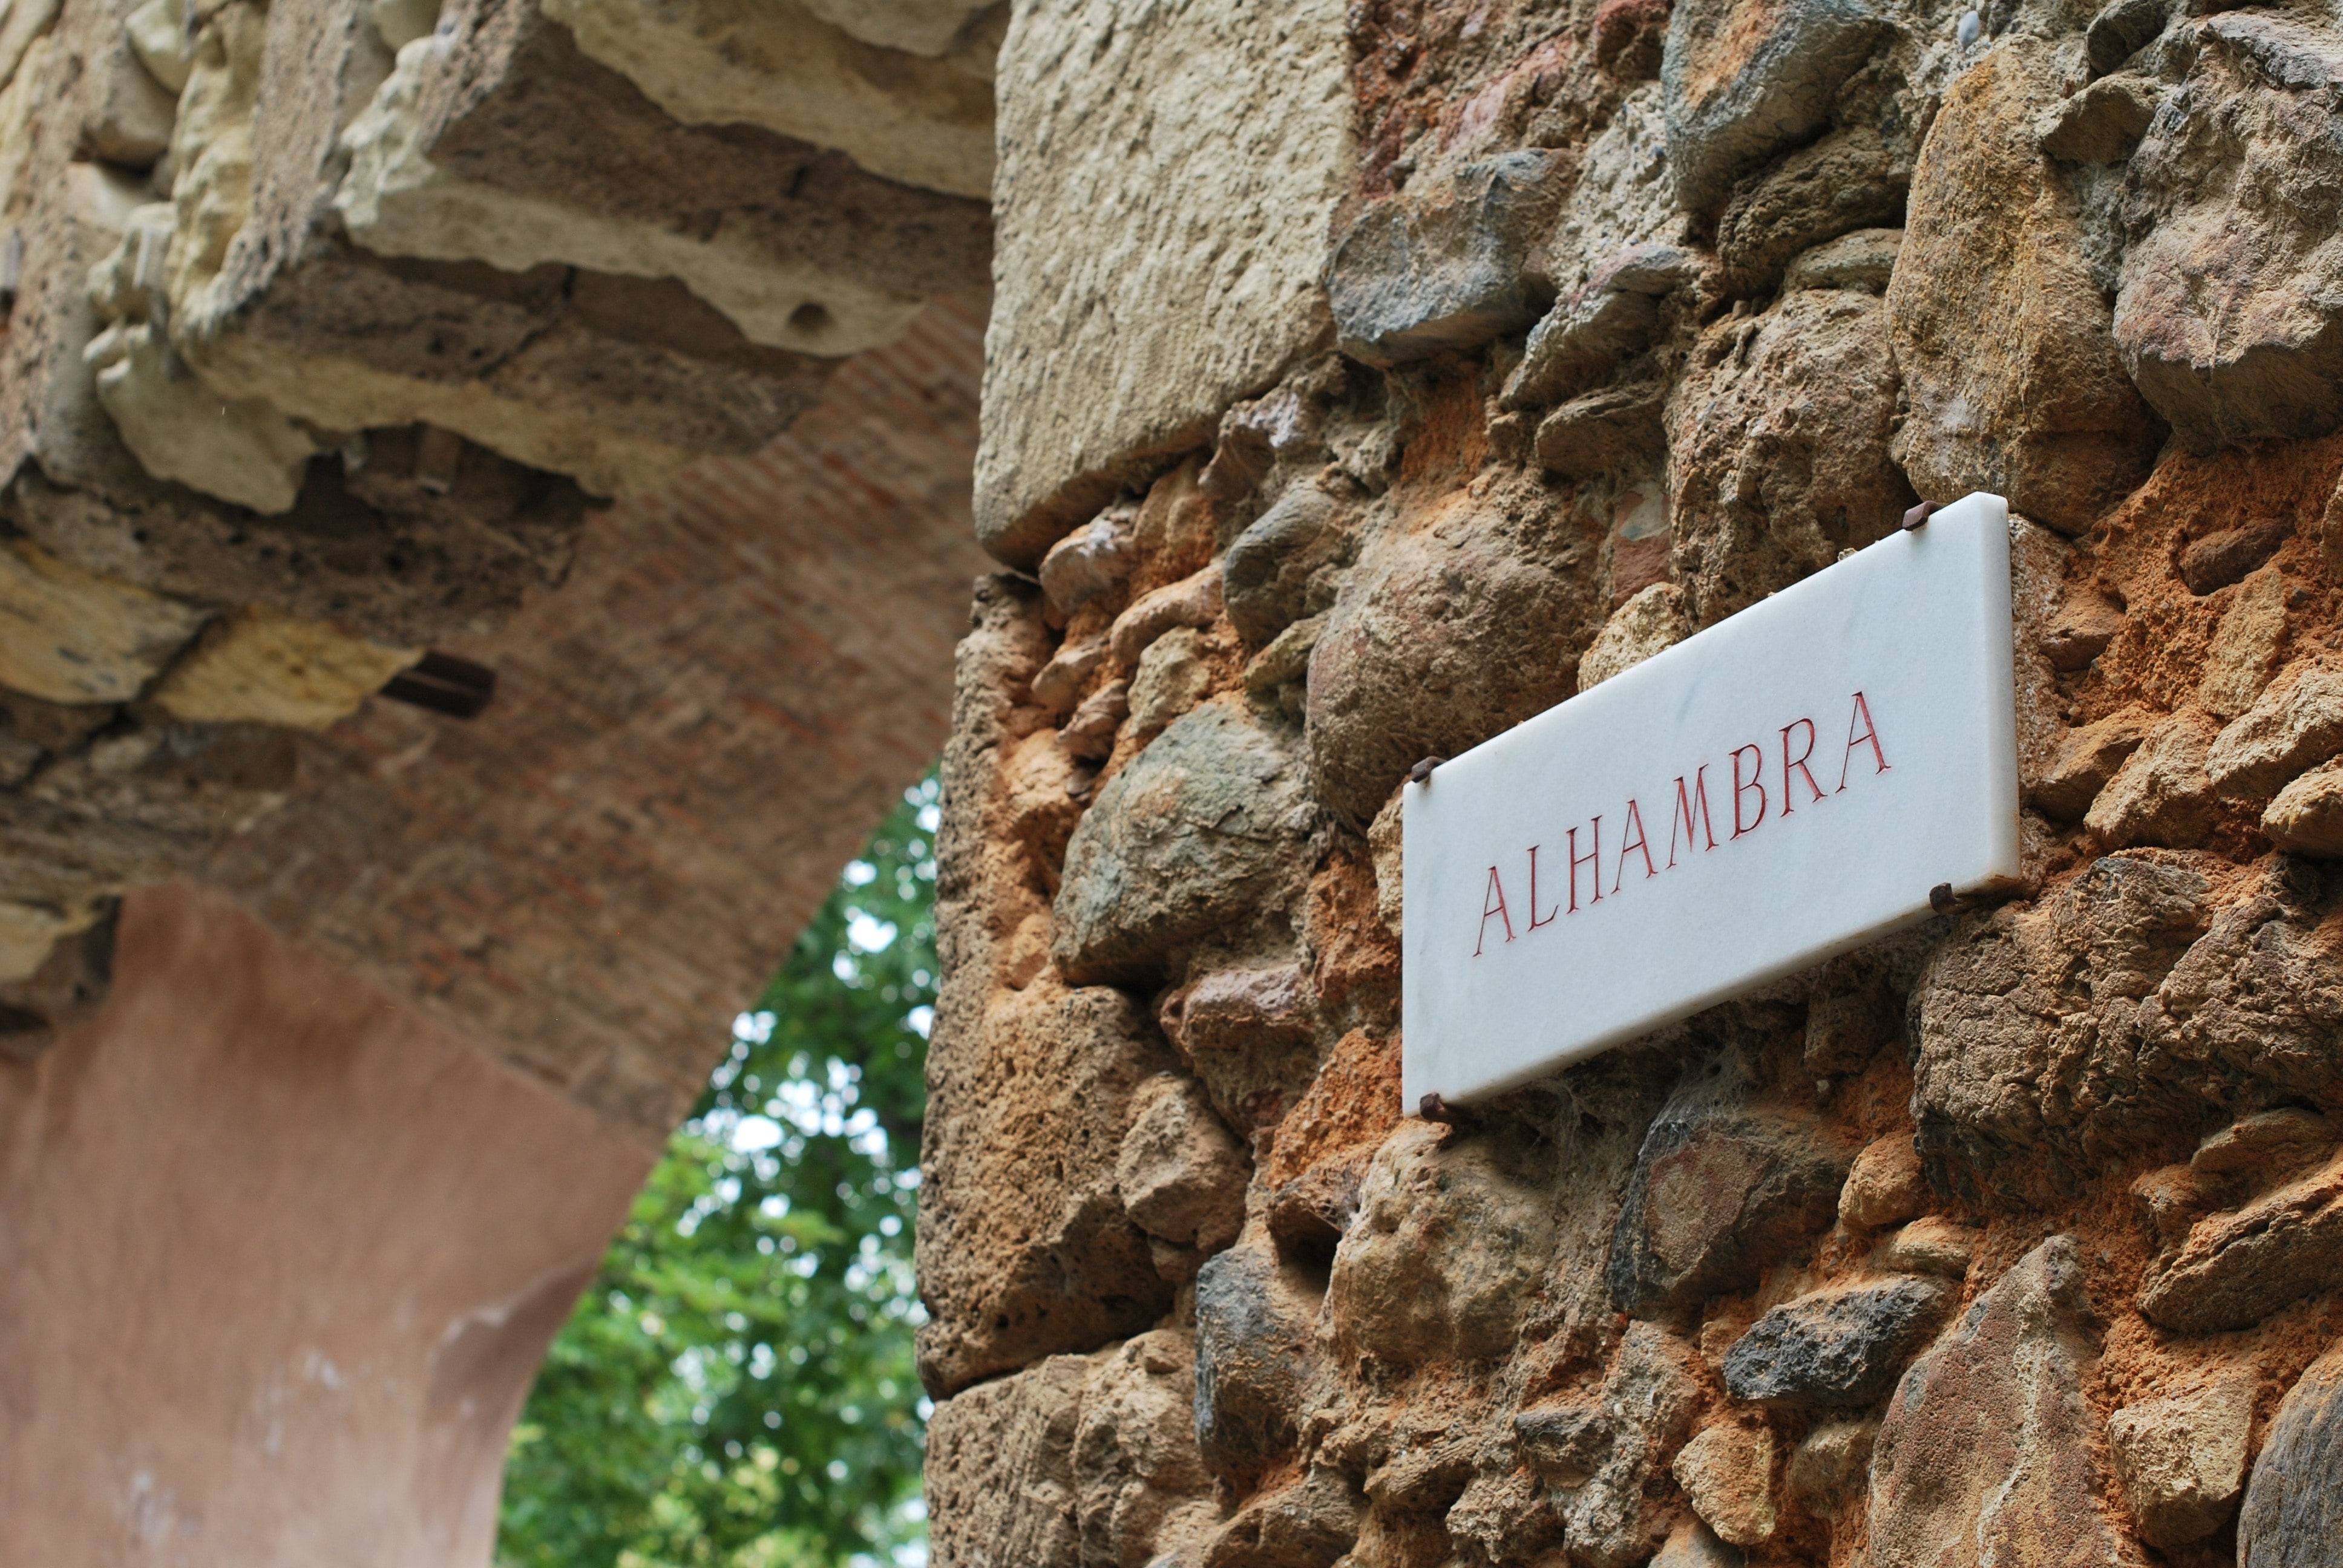 close up photo of Alhambra signage